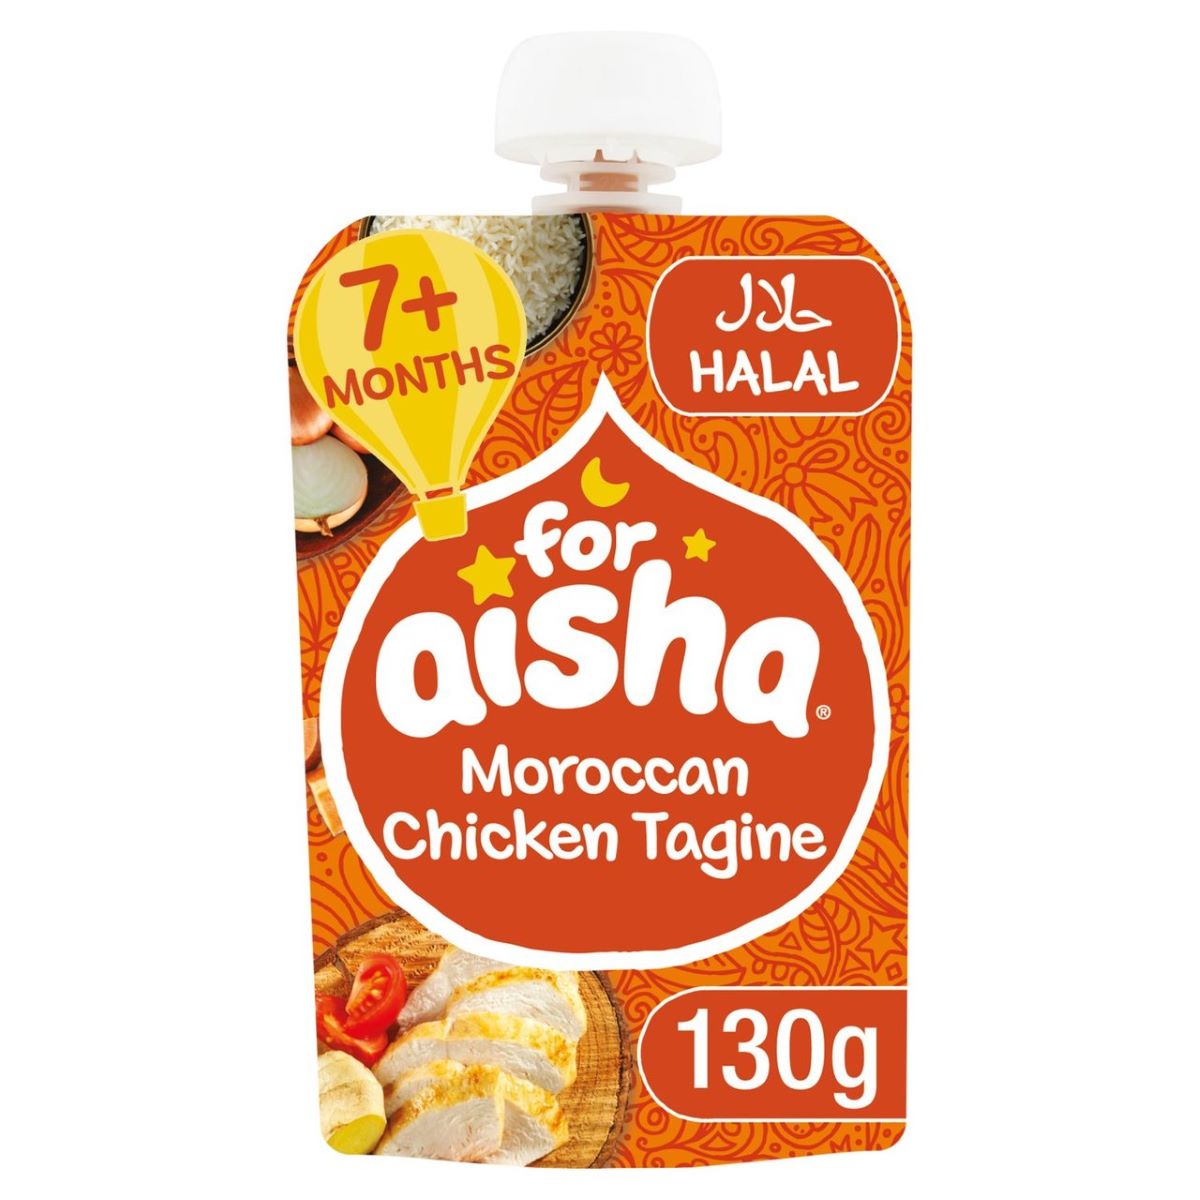 For Aisha Moroccan Chicken Tagine 130g